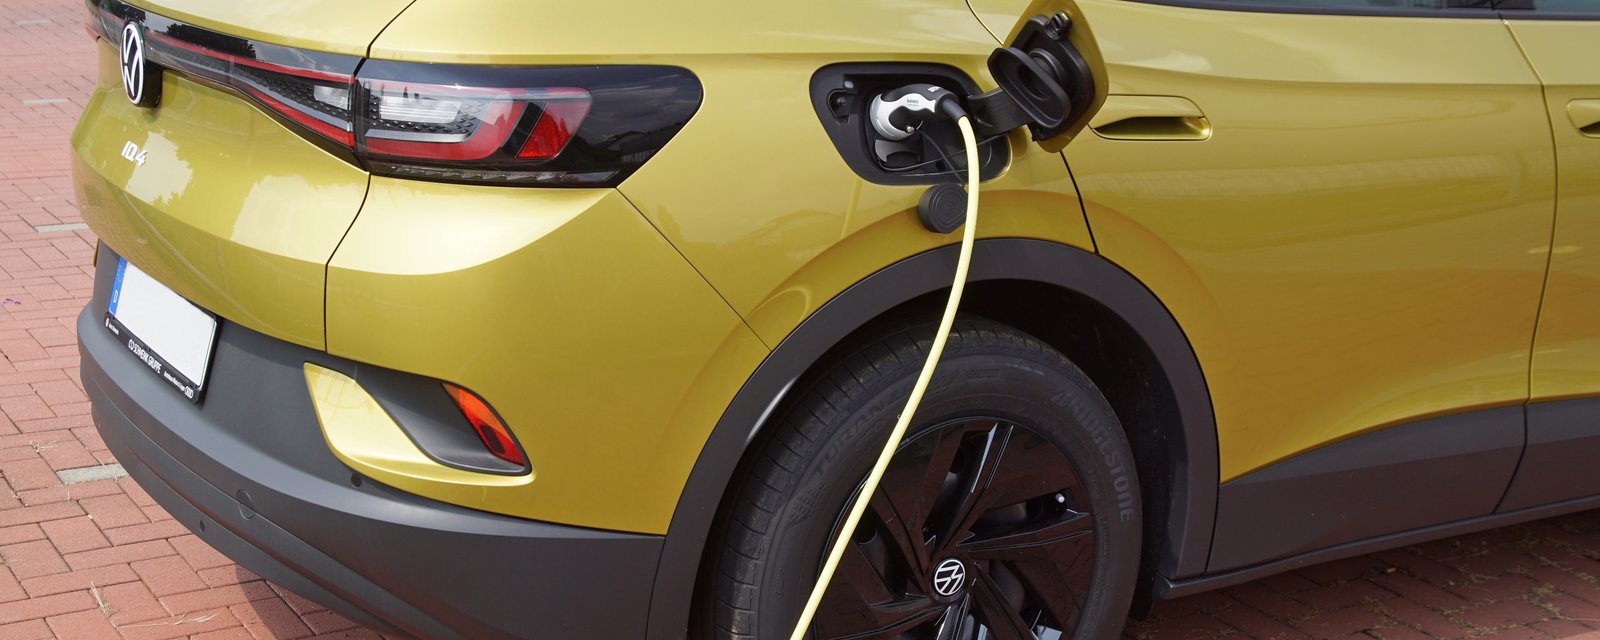 Les Québécois s'impatientent avec les voitures électriques 